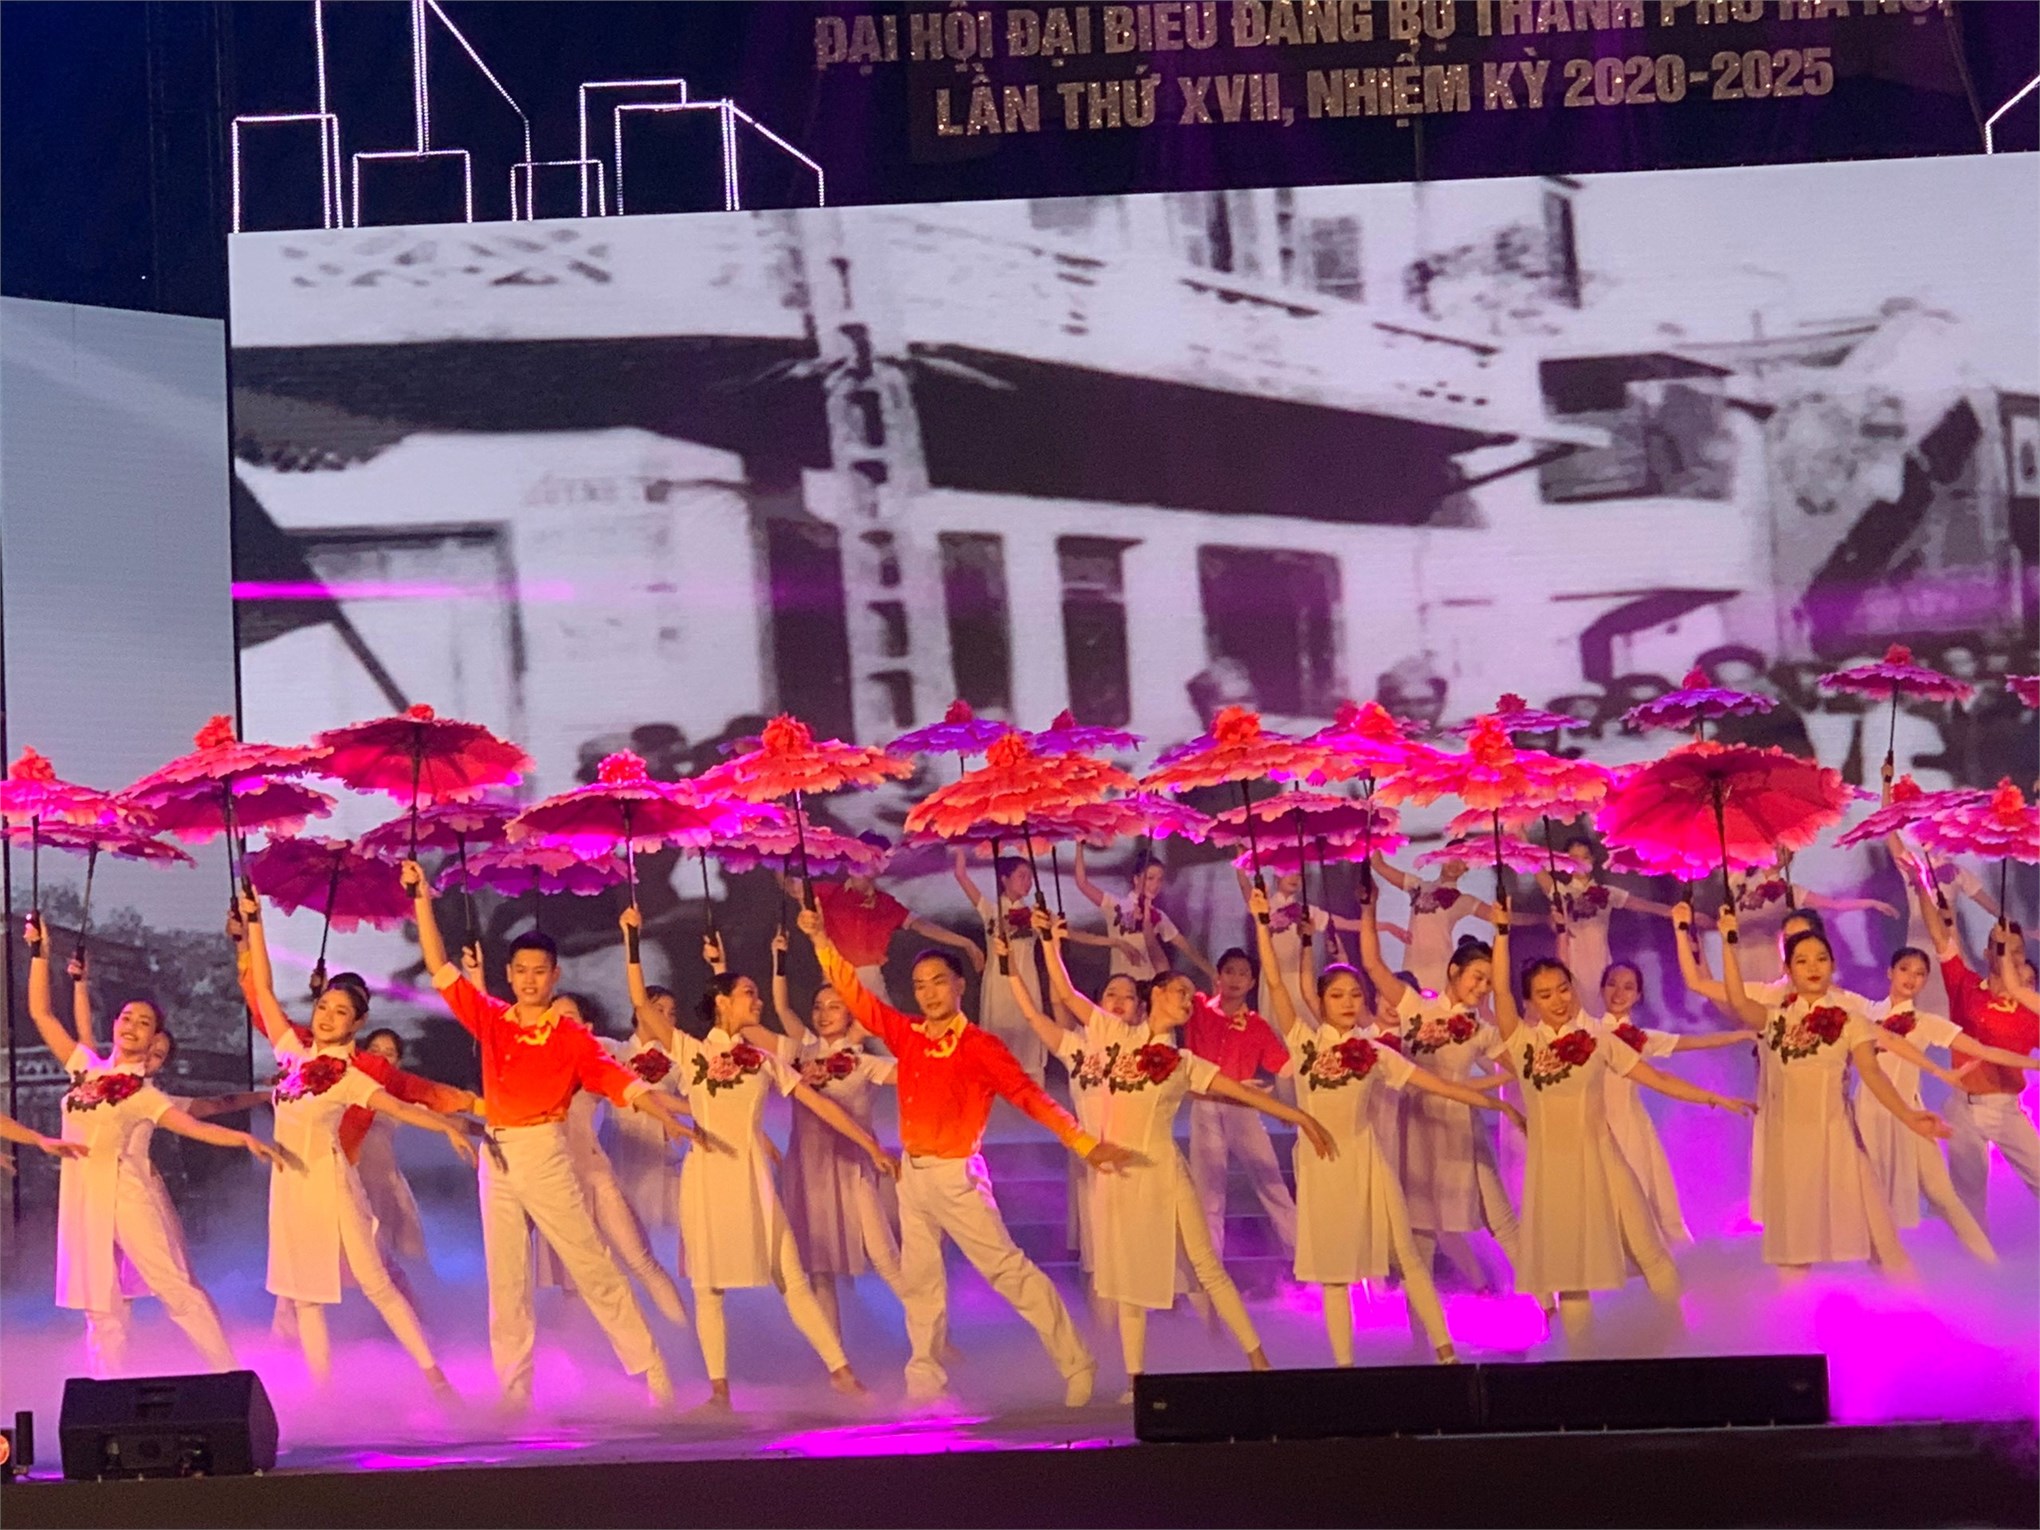 ĐVTN nhà trường biểu diễn tại Chương trình Chào mừng thành công Đại hội Đảng bộ Thành phố Hà Nội lần thứ XVII, nhiệm kỳ 2020 - 2025